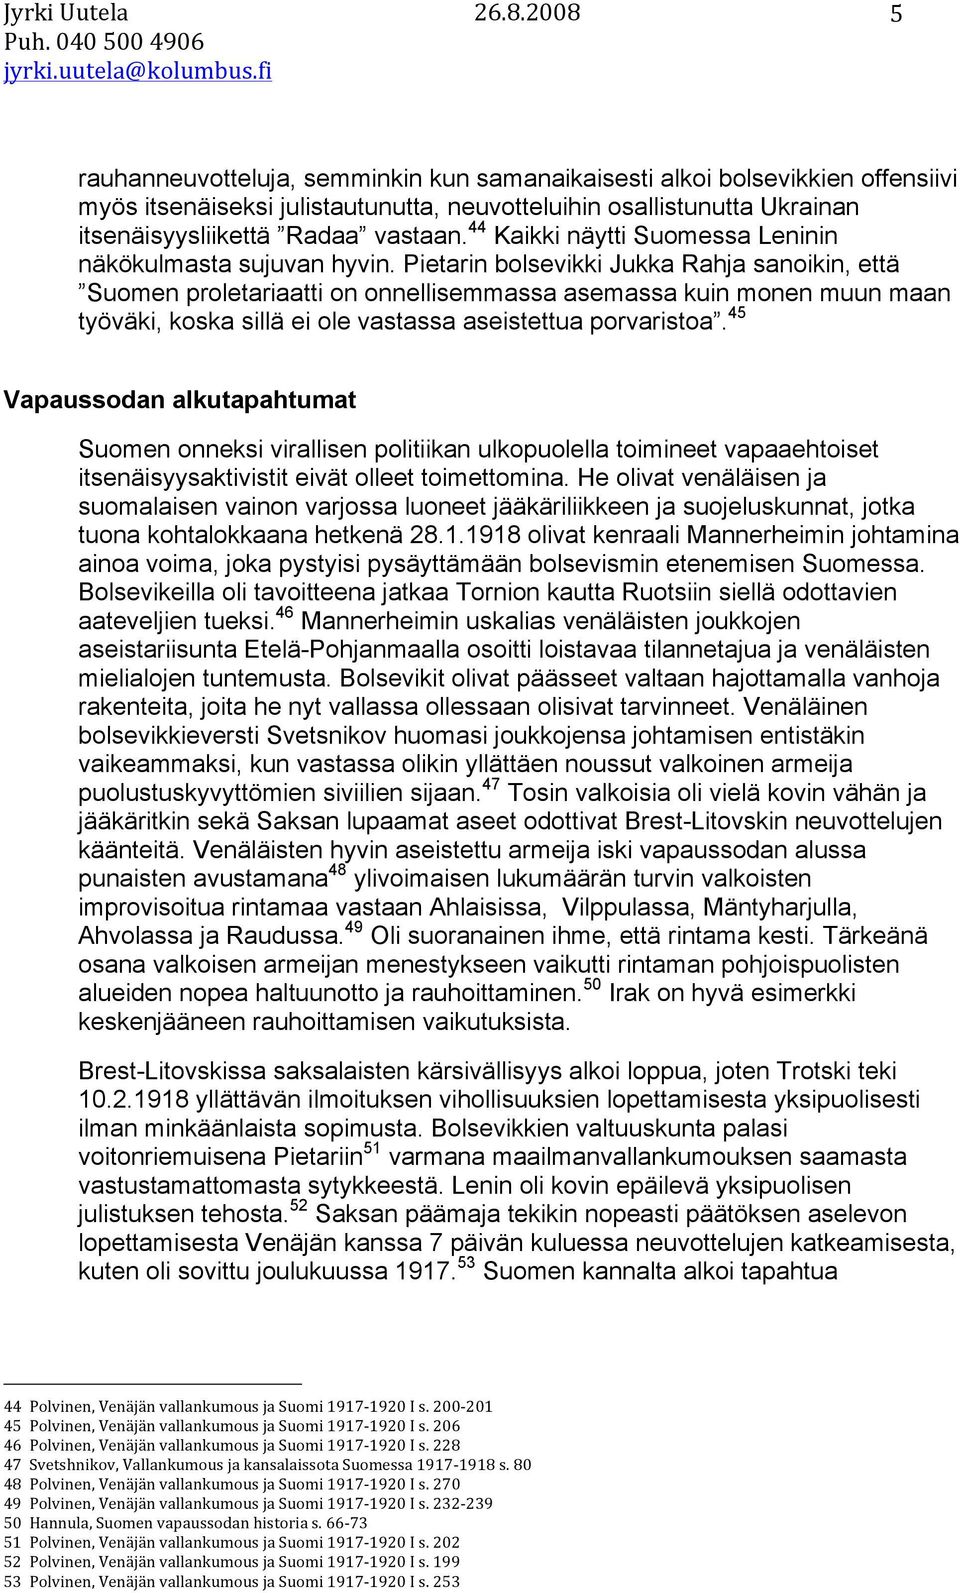 Pietarin bolsevikki Jukka Rahja sanoikin, että Suomen proletariaatti on onnellisemmassa asemassa kuin monen muun maan työväki, koska sillä ei ole vastassa aseistettua porvaristoa.